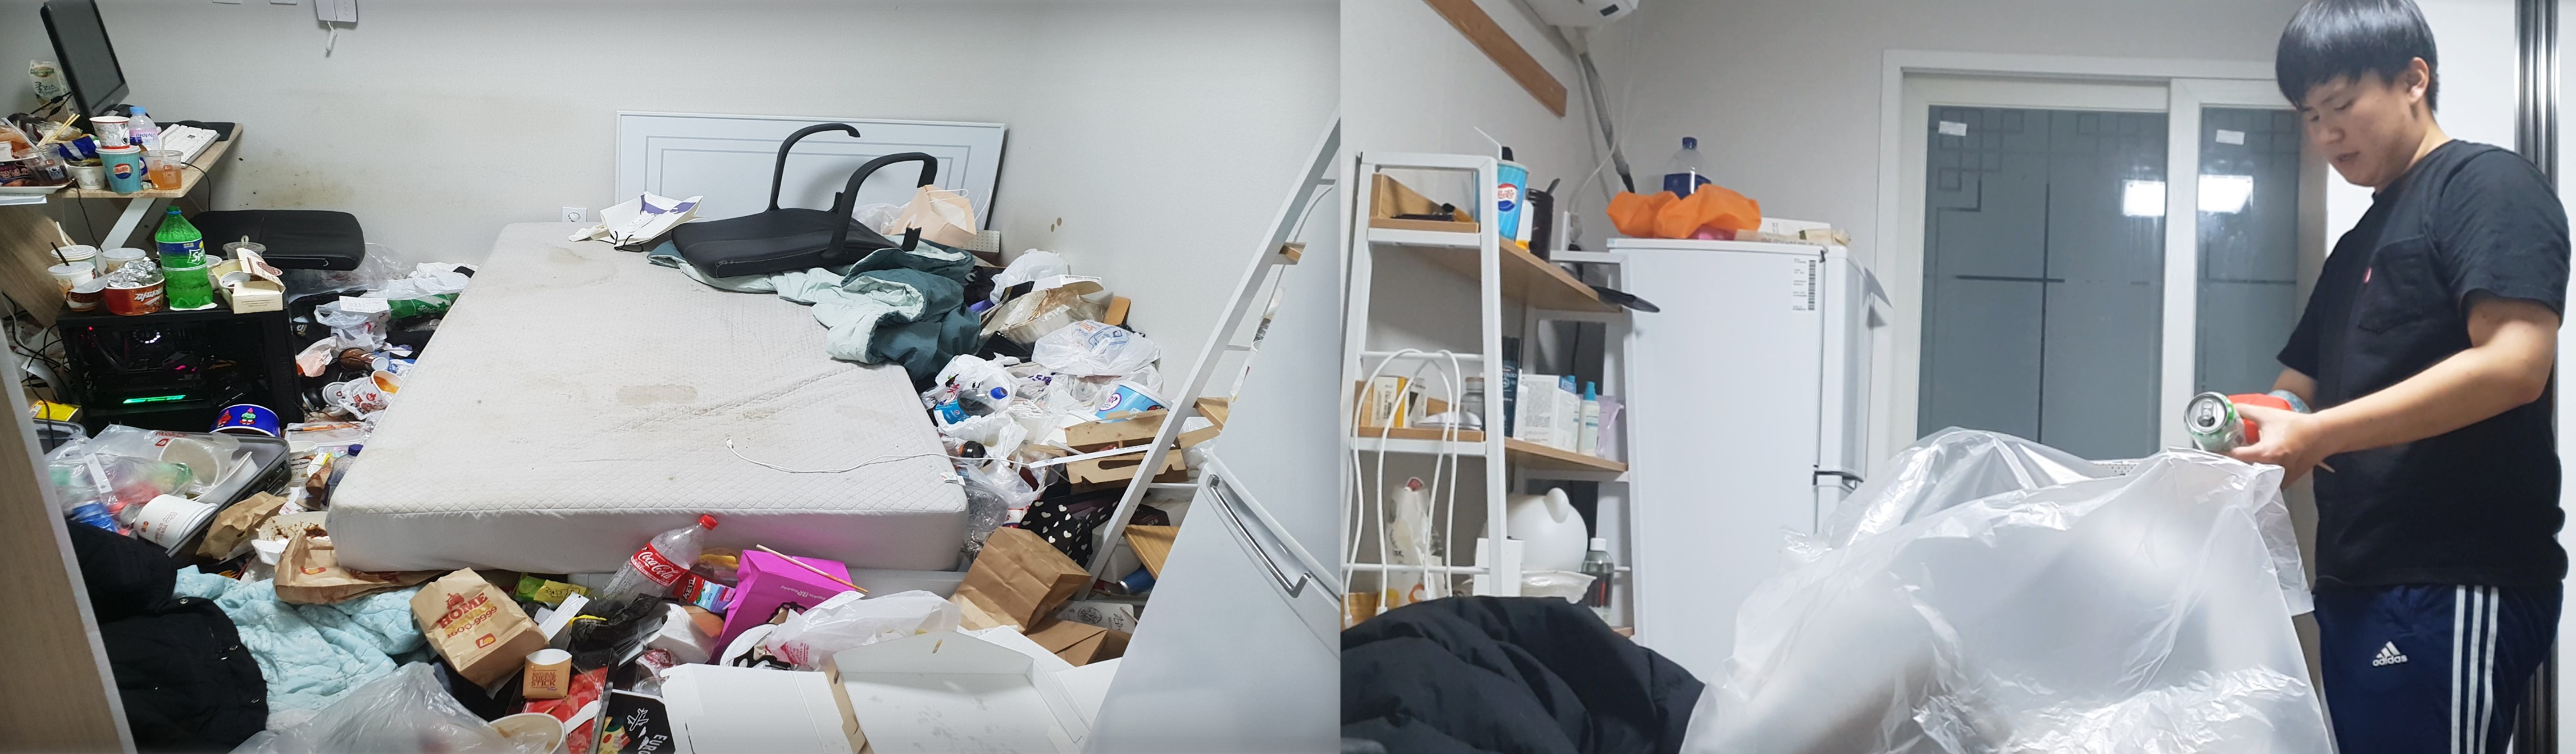 좌측 사진은 유승규 대표의 더러운 방 사진. 우측 사진은 유승규 대표님이 청소를 하는 사진